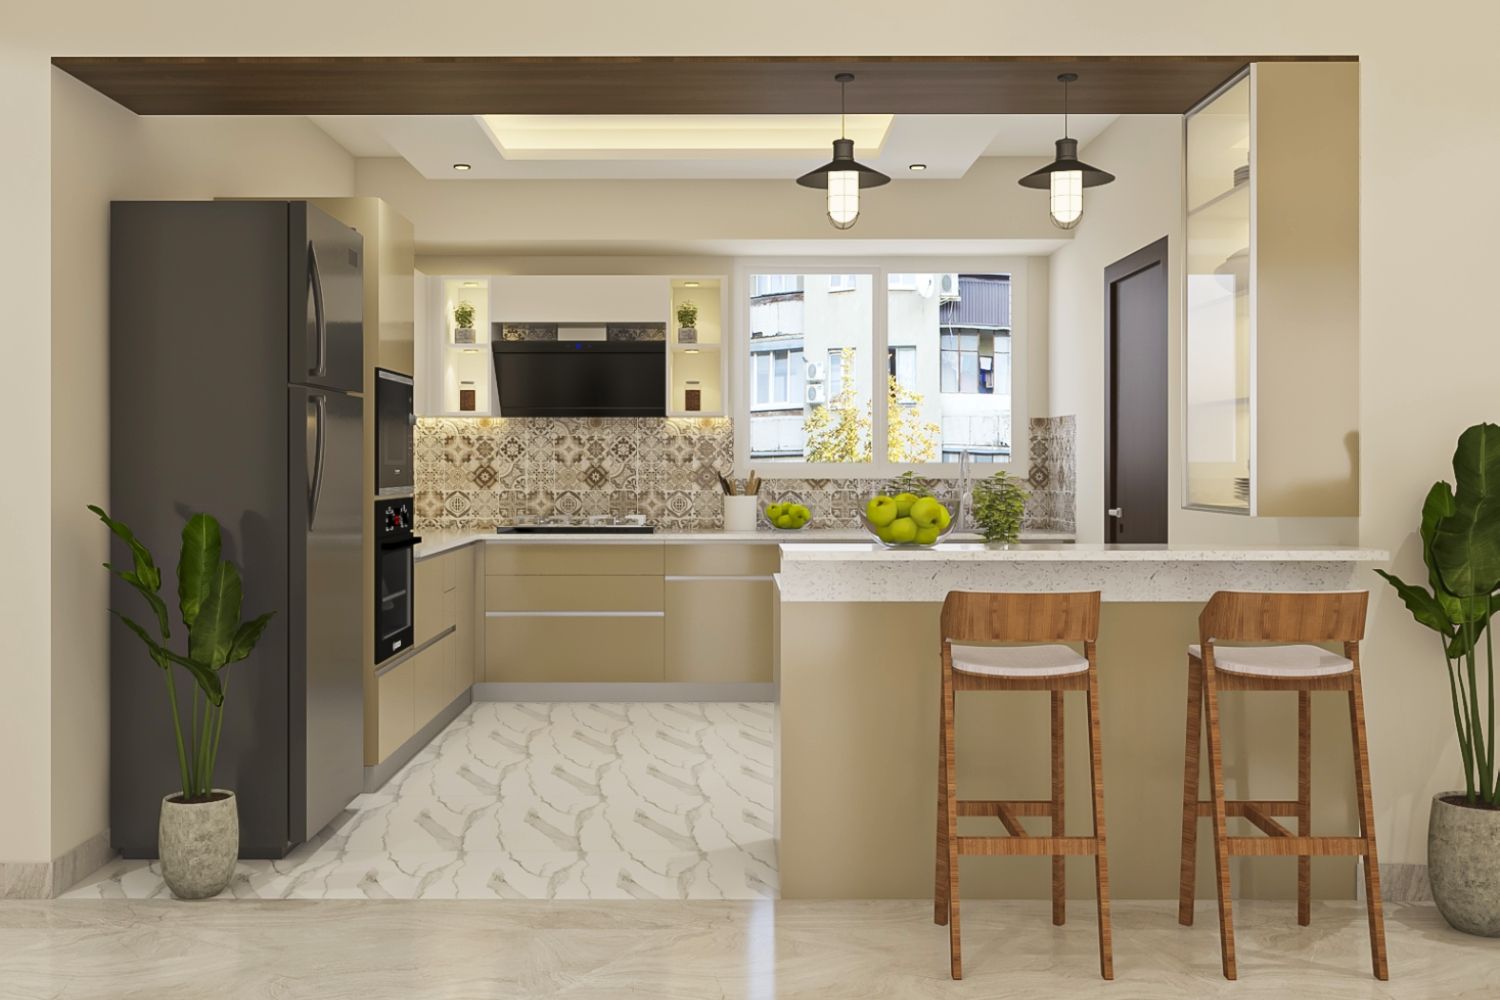 Modern Modular Open Kitchen Design With Irish Cream And White Kitchen Cabinets